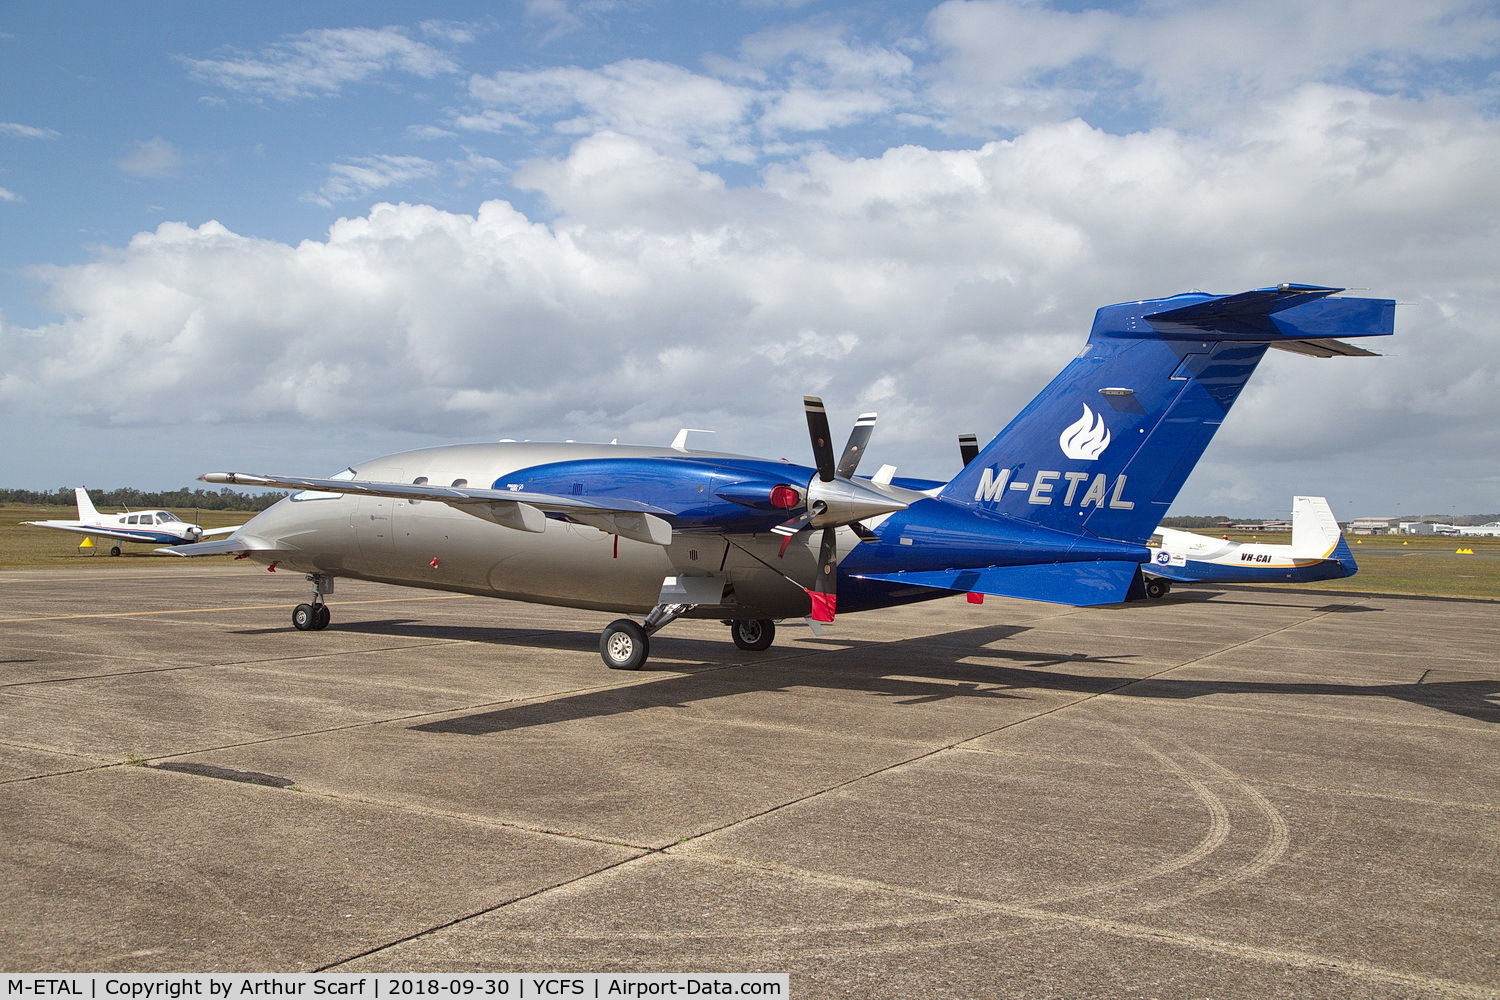 M-ETAL, 2009 Piaggio P-180 Avanti II C/N 1194, Coffs Harbour Airport 2018